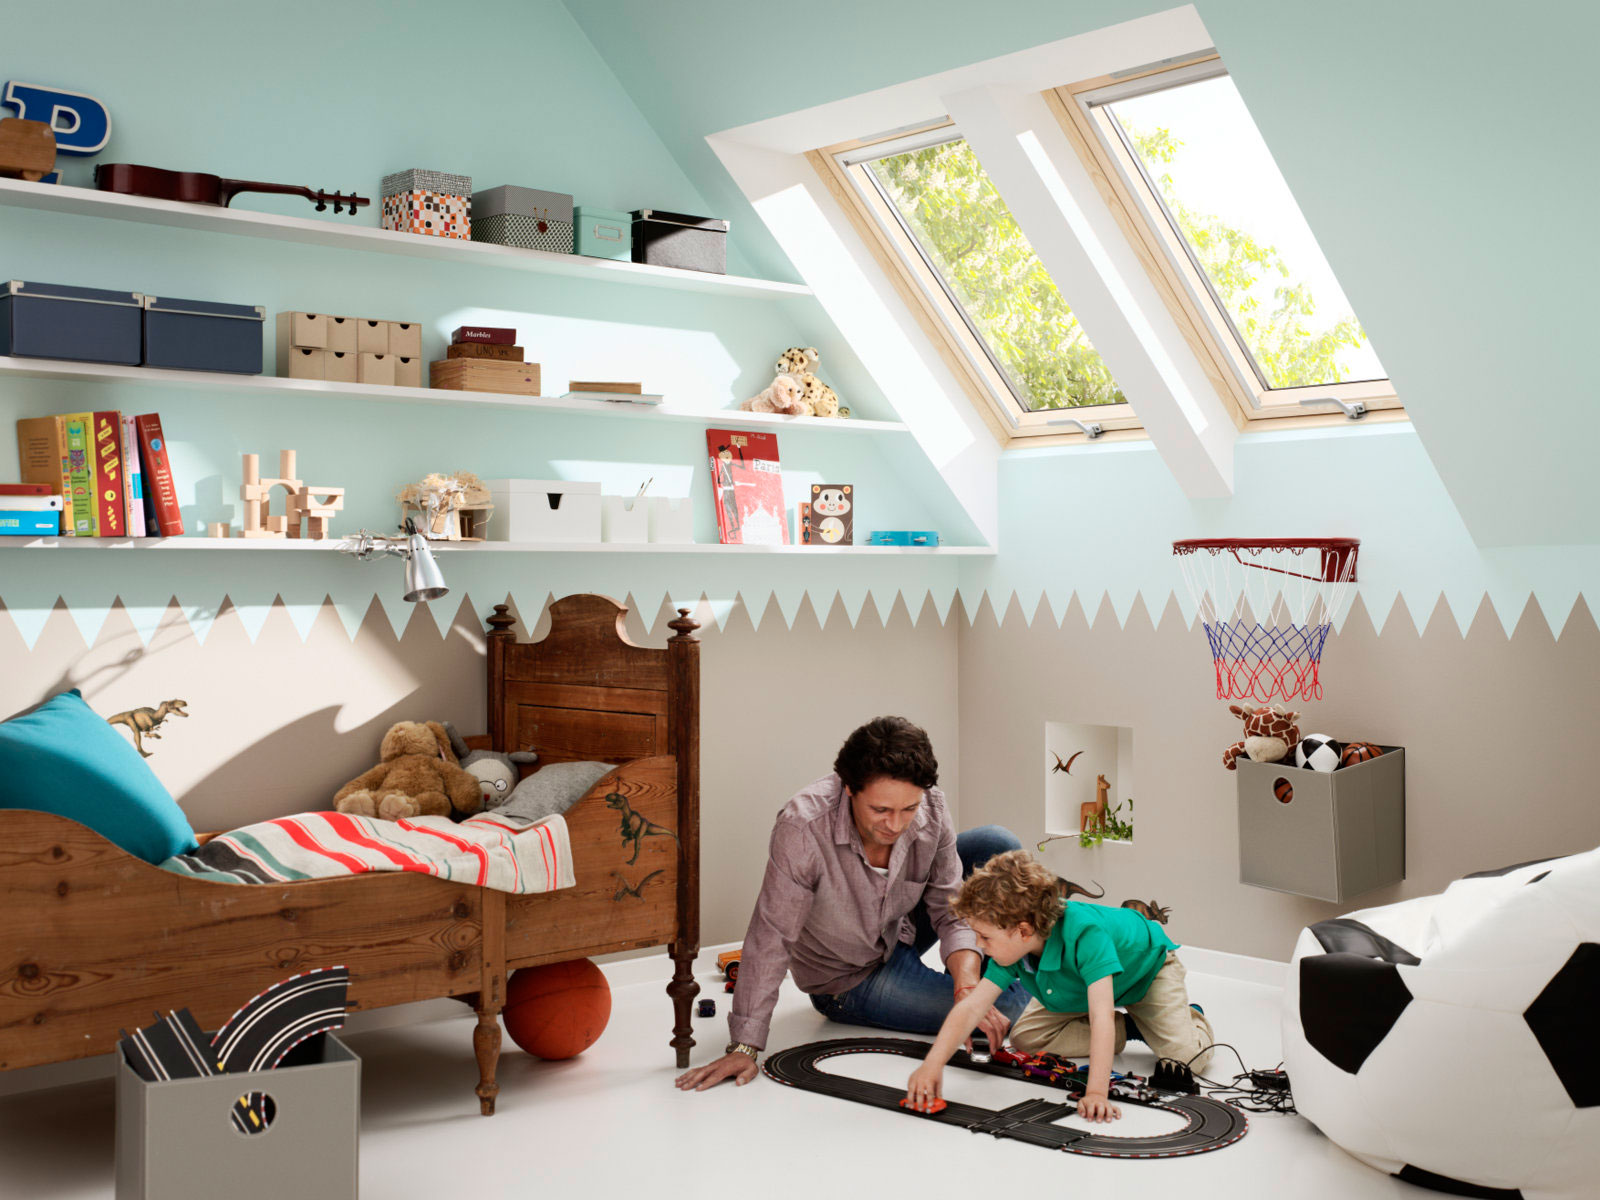 Vyššie osadené strešné okná VELUX so spodnou kľučkou osvetlia miestnosť do väčšej hĺbky, čo je vhodné v detskej izbe, kde je dostatok svetla veľmi dôležitý pri hre alebo učení.